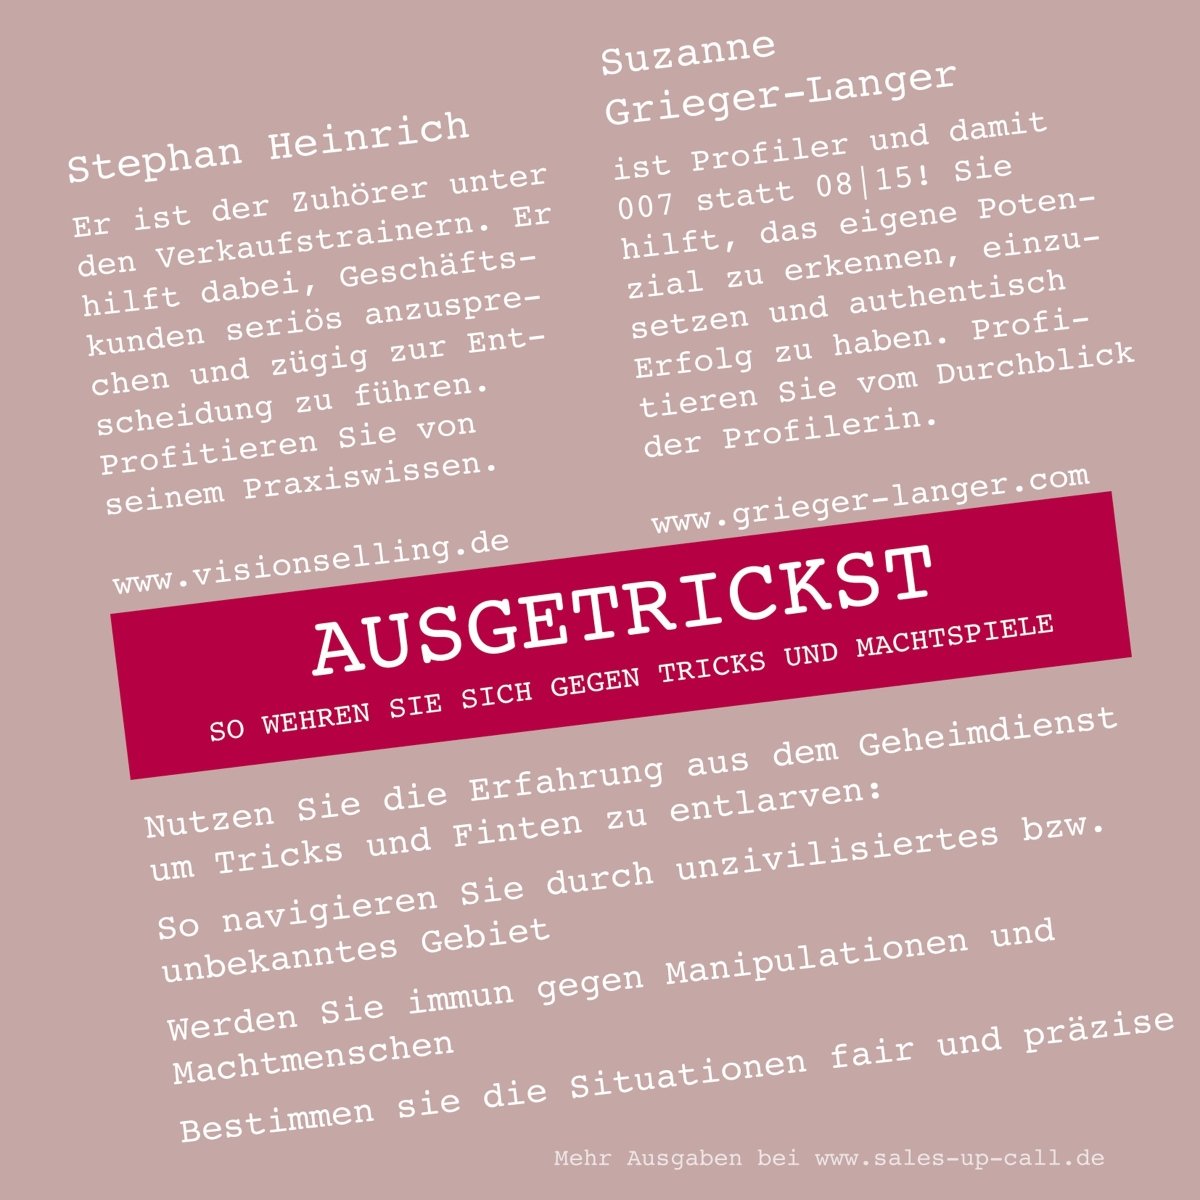 Ausgetrickst - Sales-up-Call - Stephan Heinrich